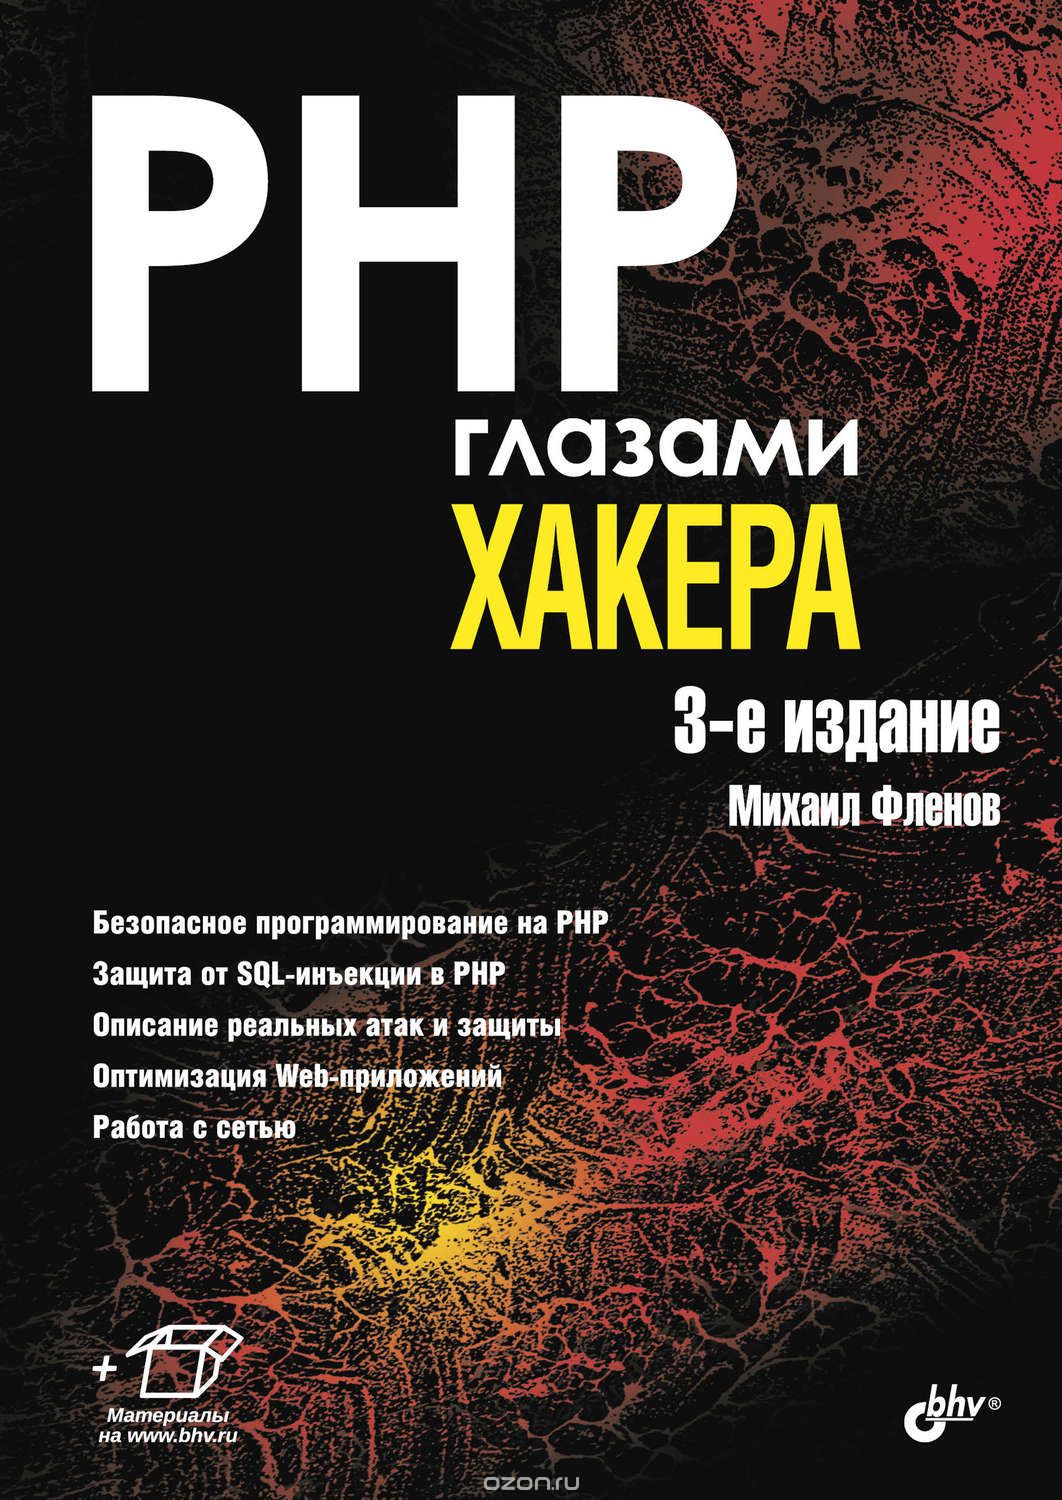 Что почитать по PHP на русском? - 2